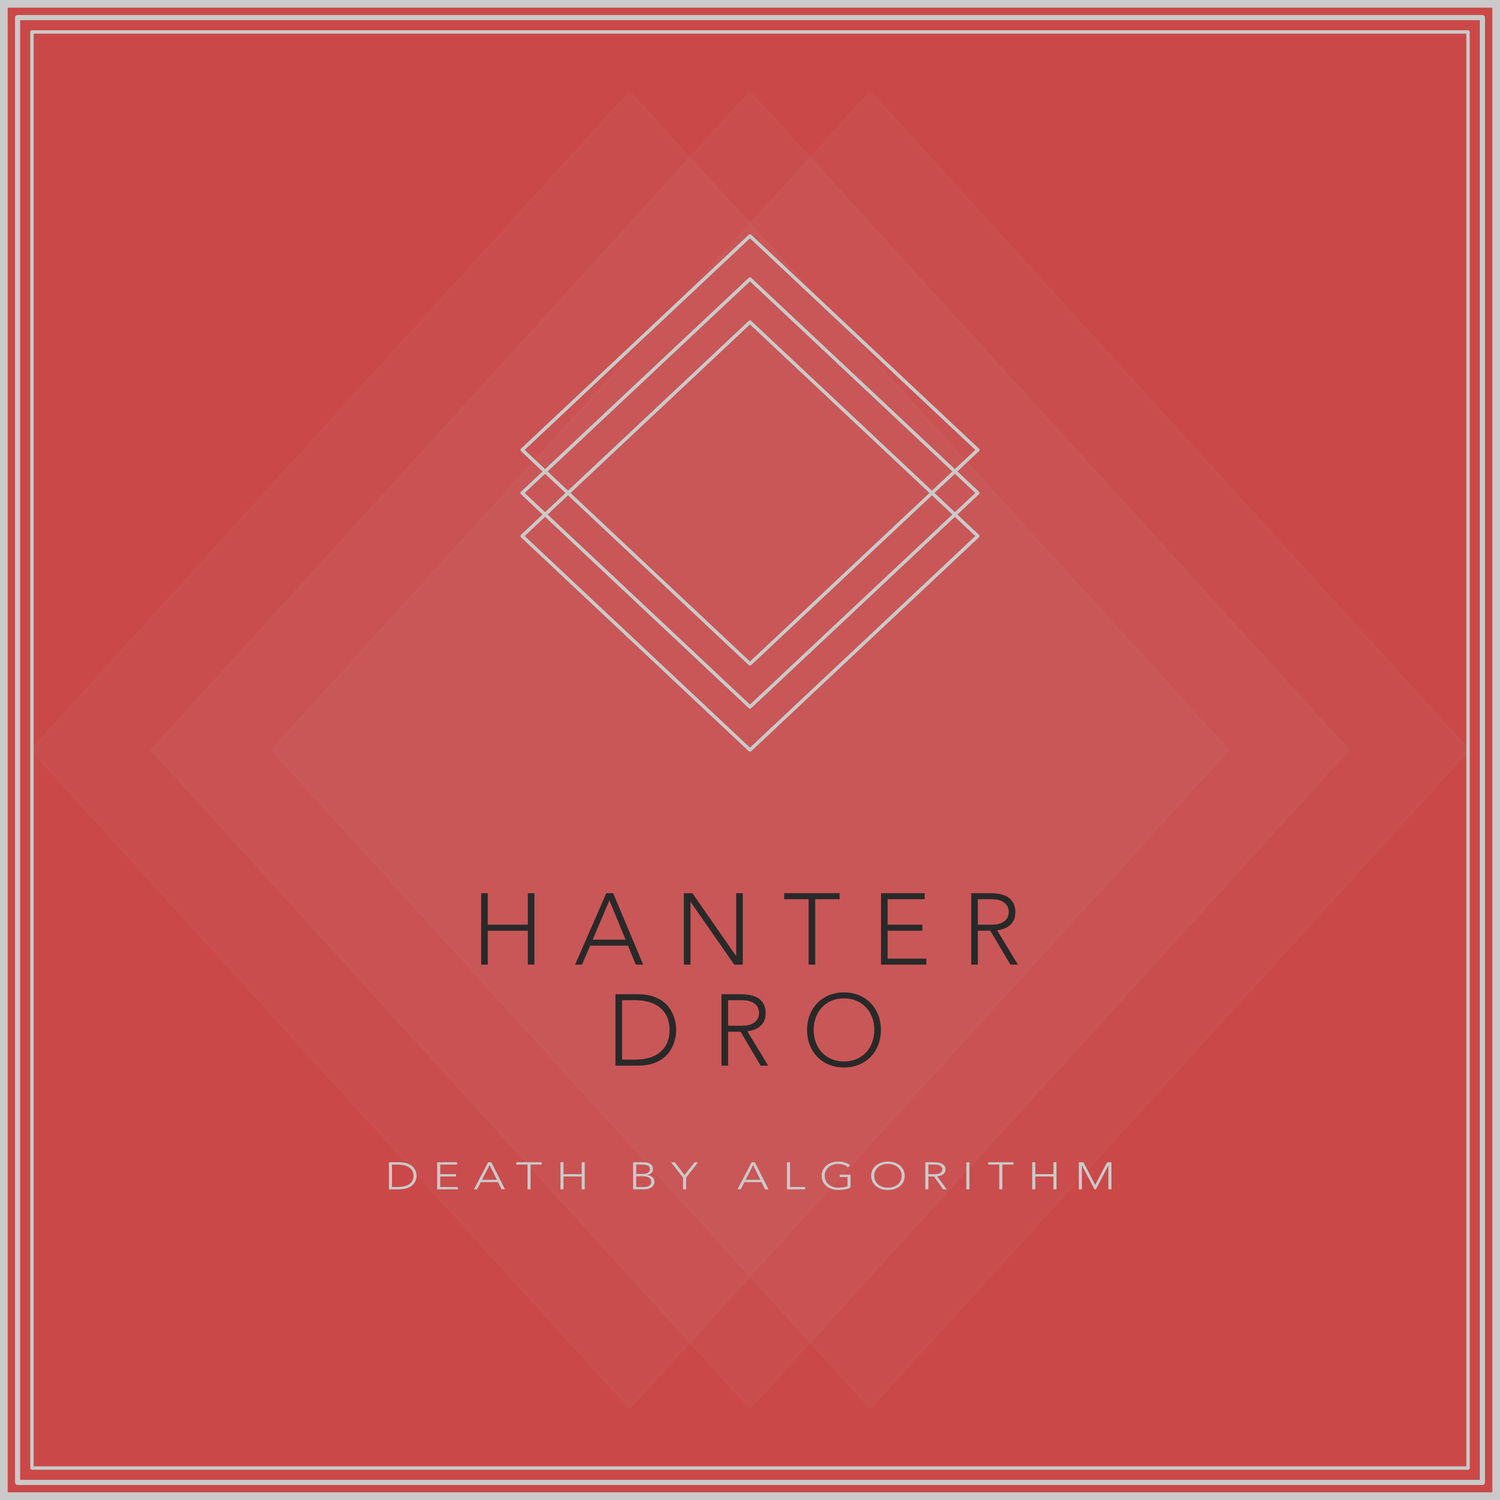 Hanter Dro – Death by Algorithm (2020) [FLAC 24bit/96kHz]